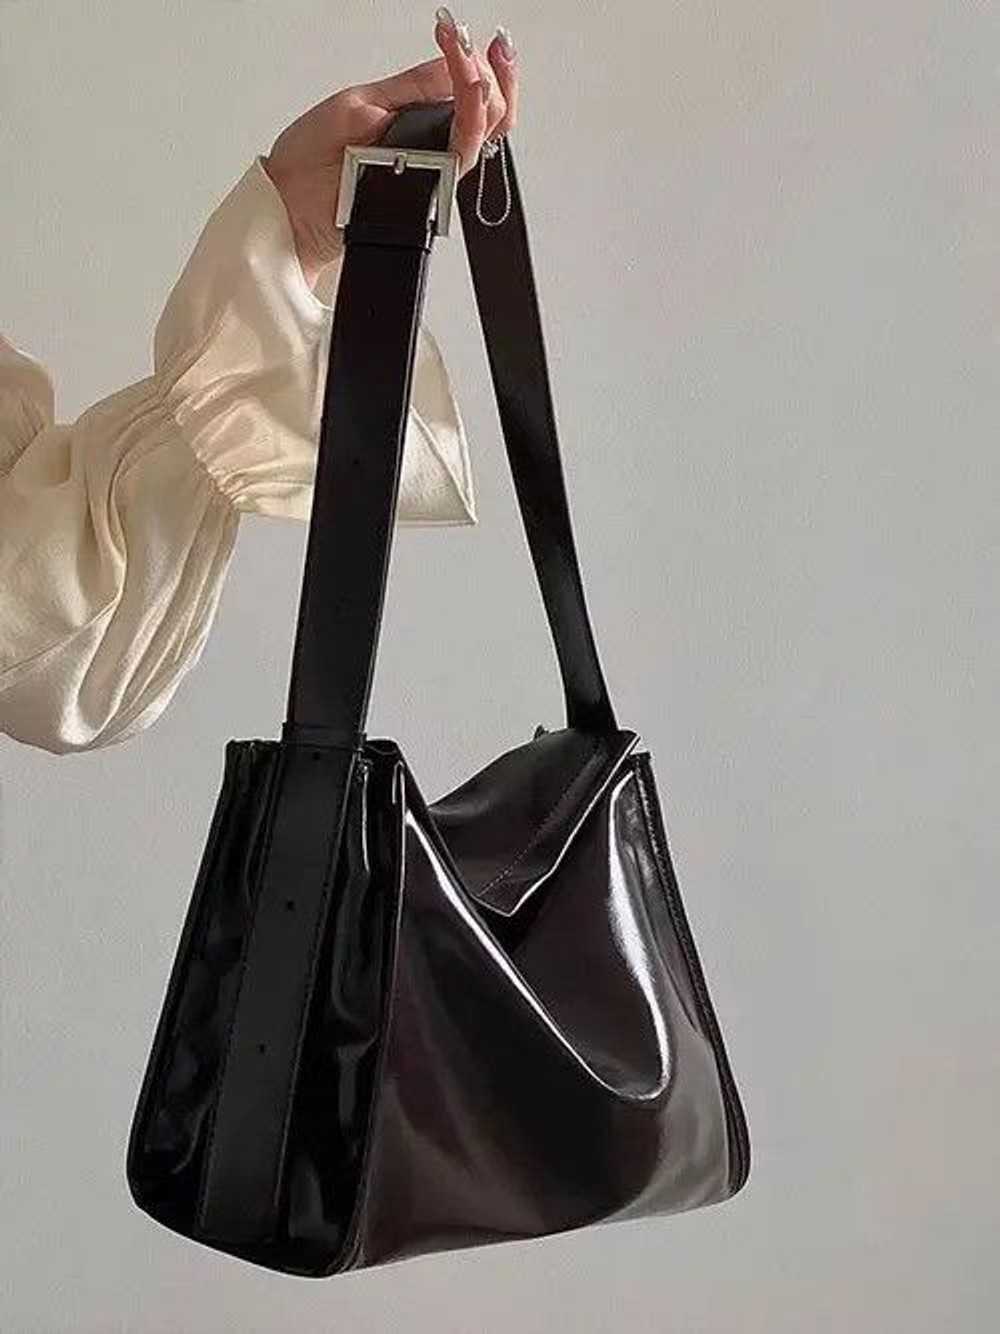 Bag × Japanese Brand Brown shoulder bag - image 2